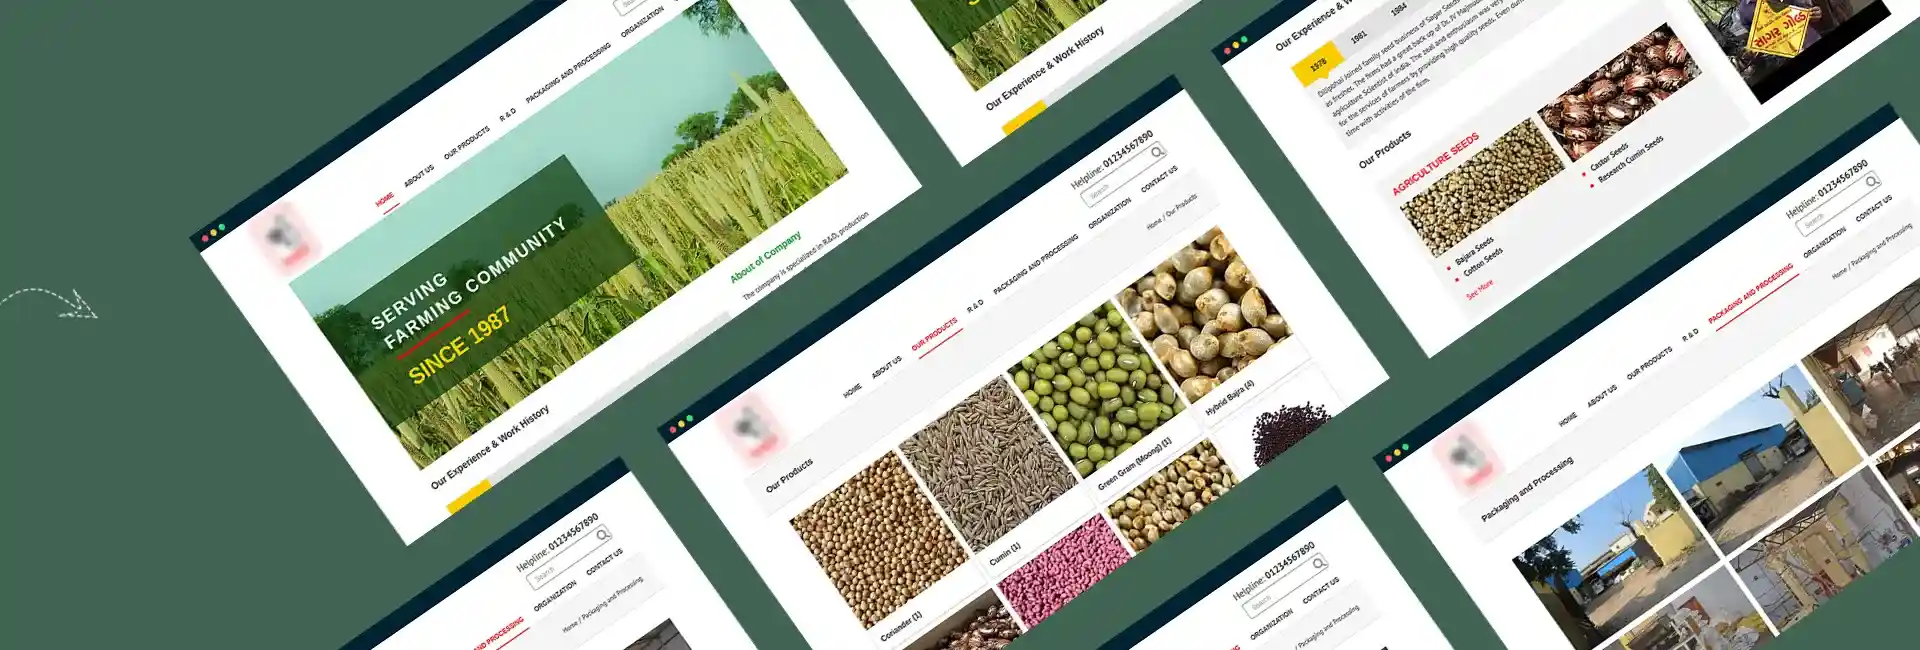 seeds-manufacturer-website-01